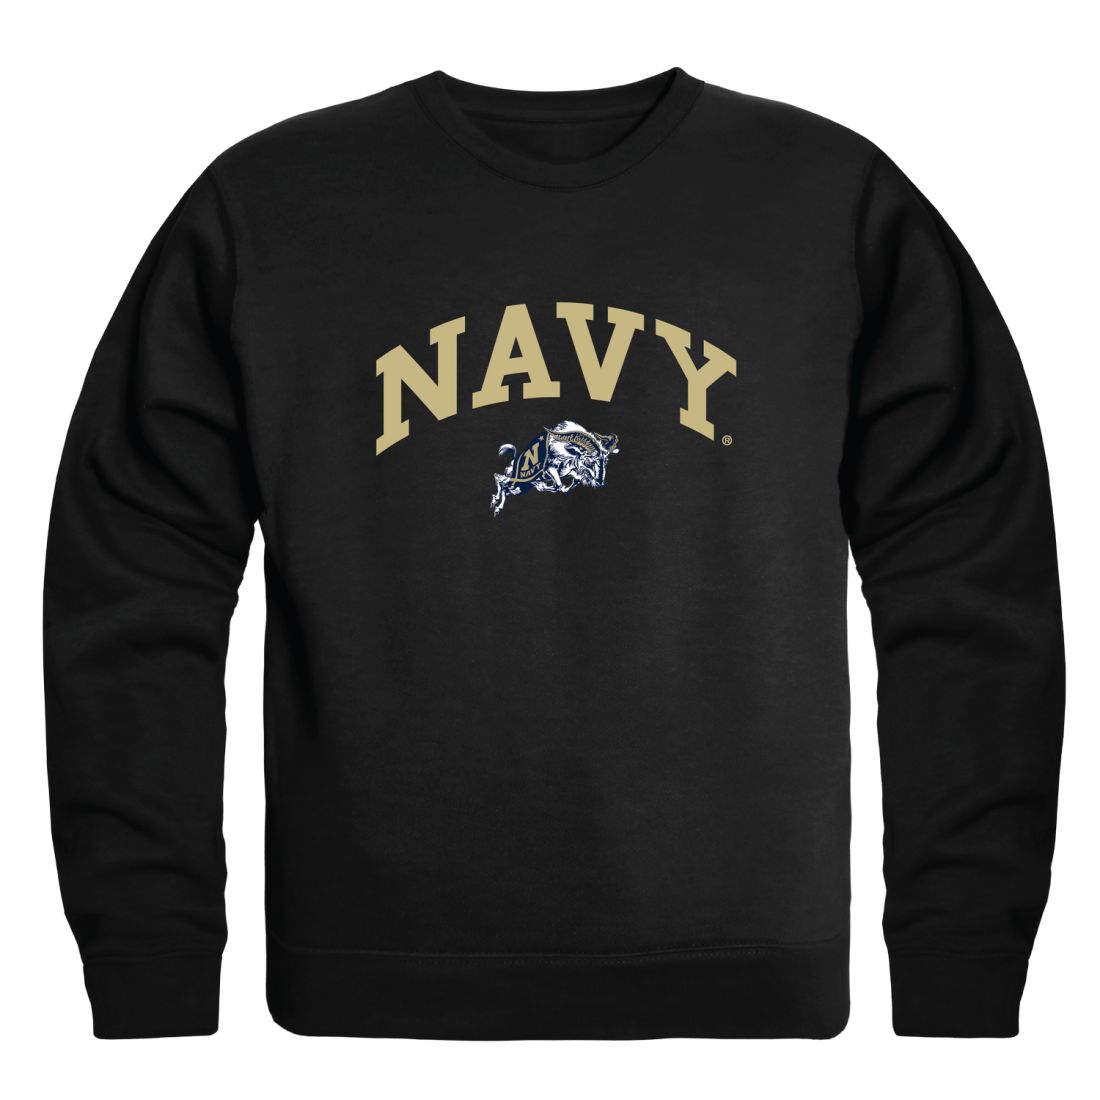 United States Naval Academy Midshipmen Campus Crewneck Sweatshirt